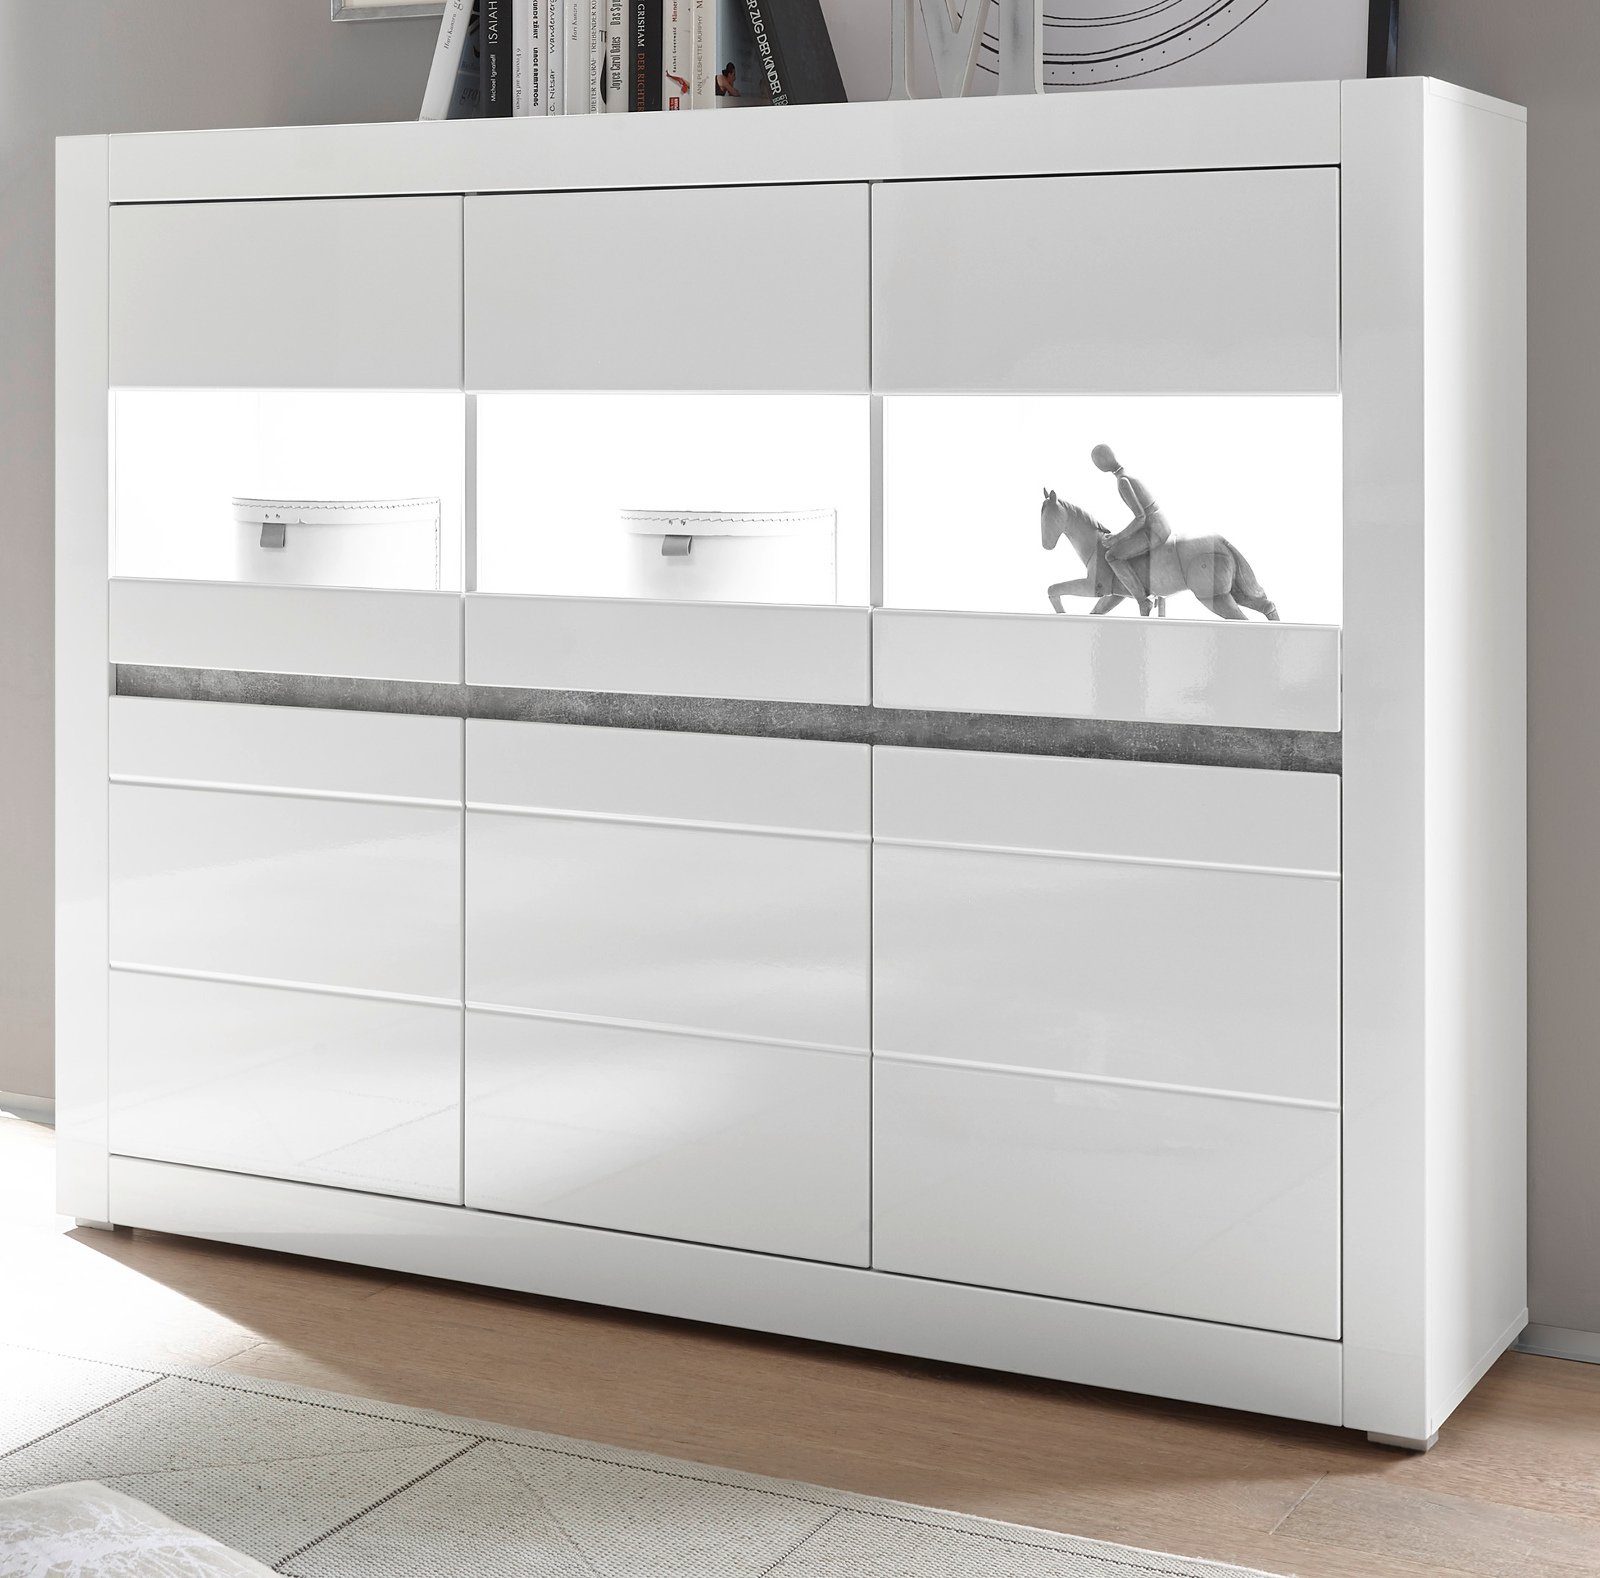 IMV Highboard Nobile (Schrank in weiß mit 6 Türen, 164 x 131 cm),  Hochglanz, mit Soft-Close